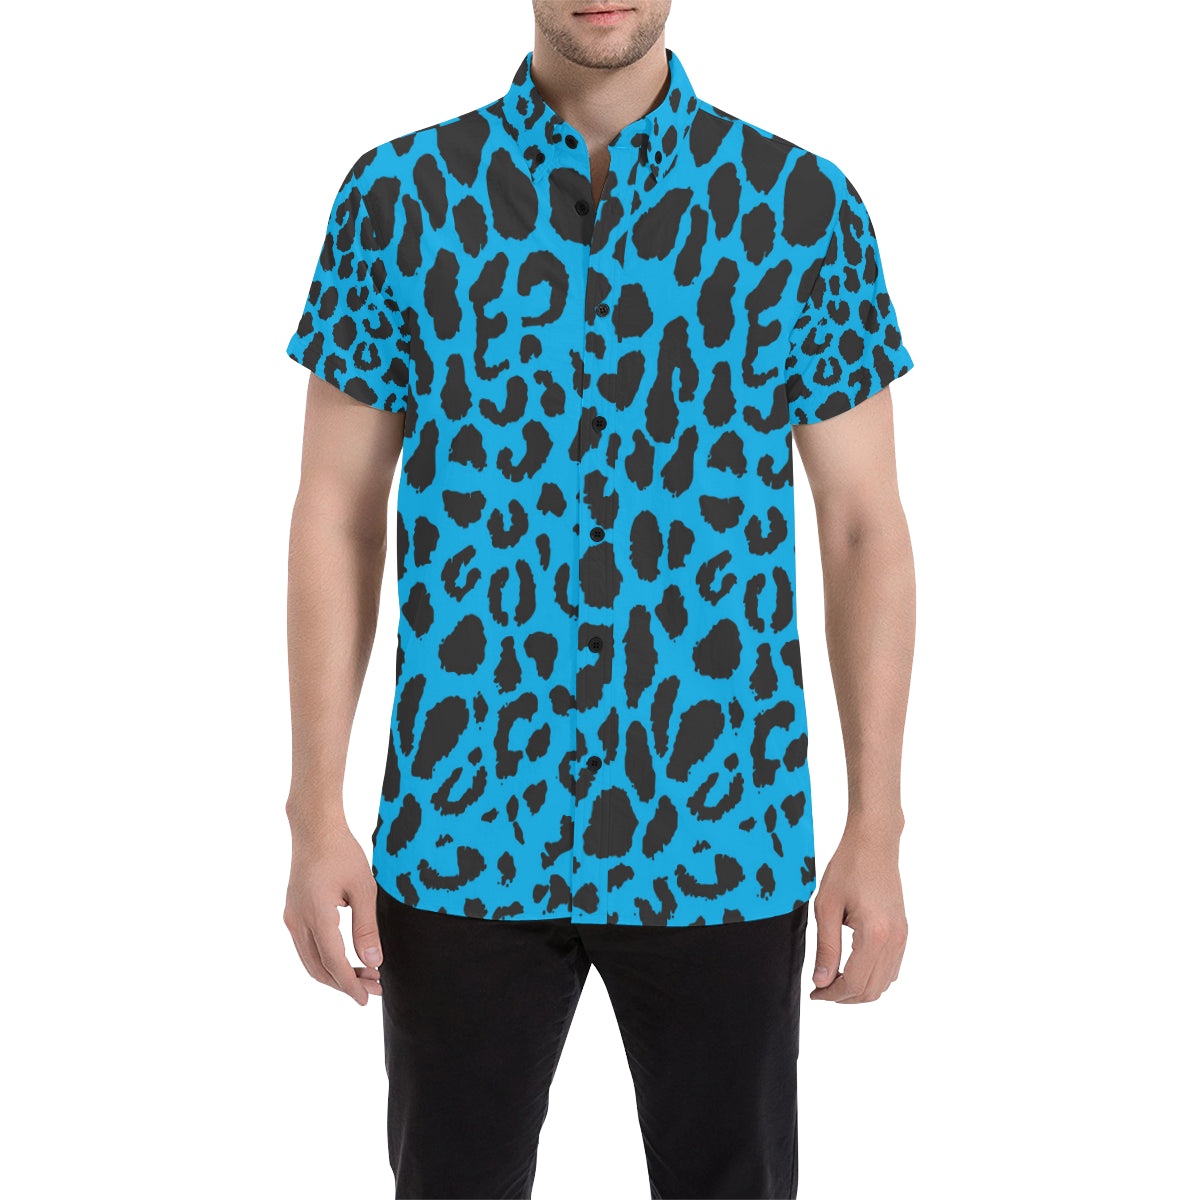 Cheetah Blue Print Pattern Men's Short Sleeve Button Up Shirt